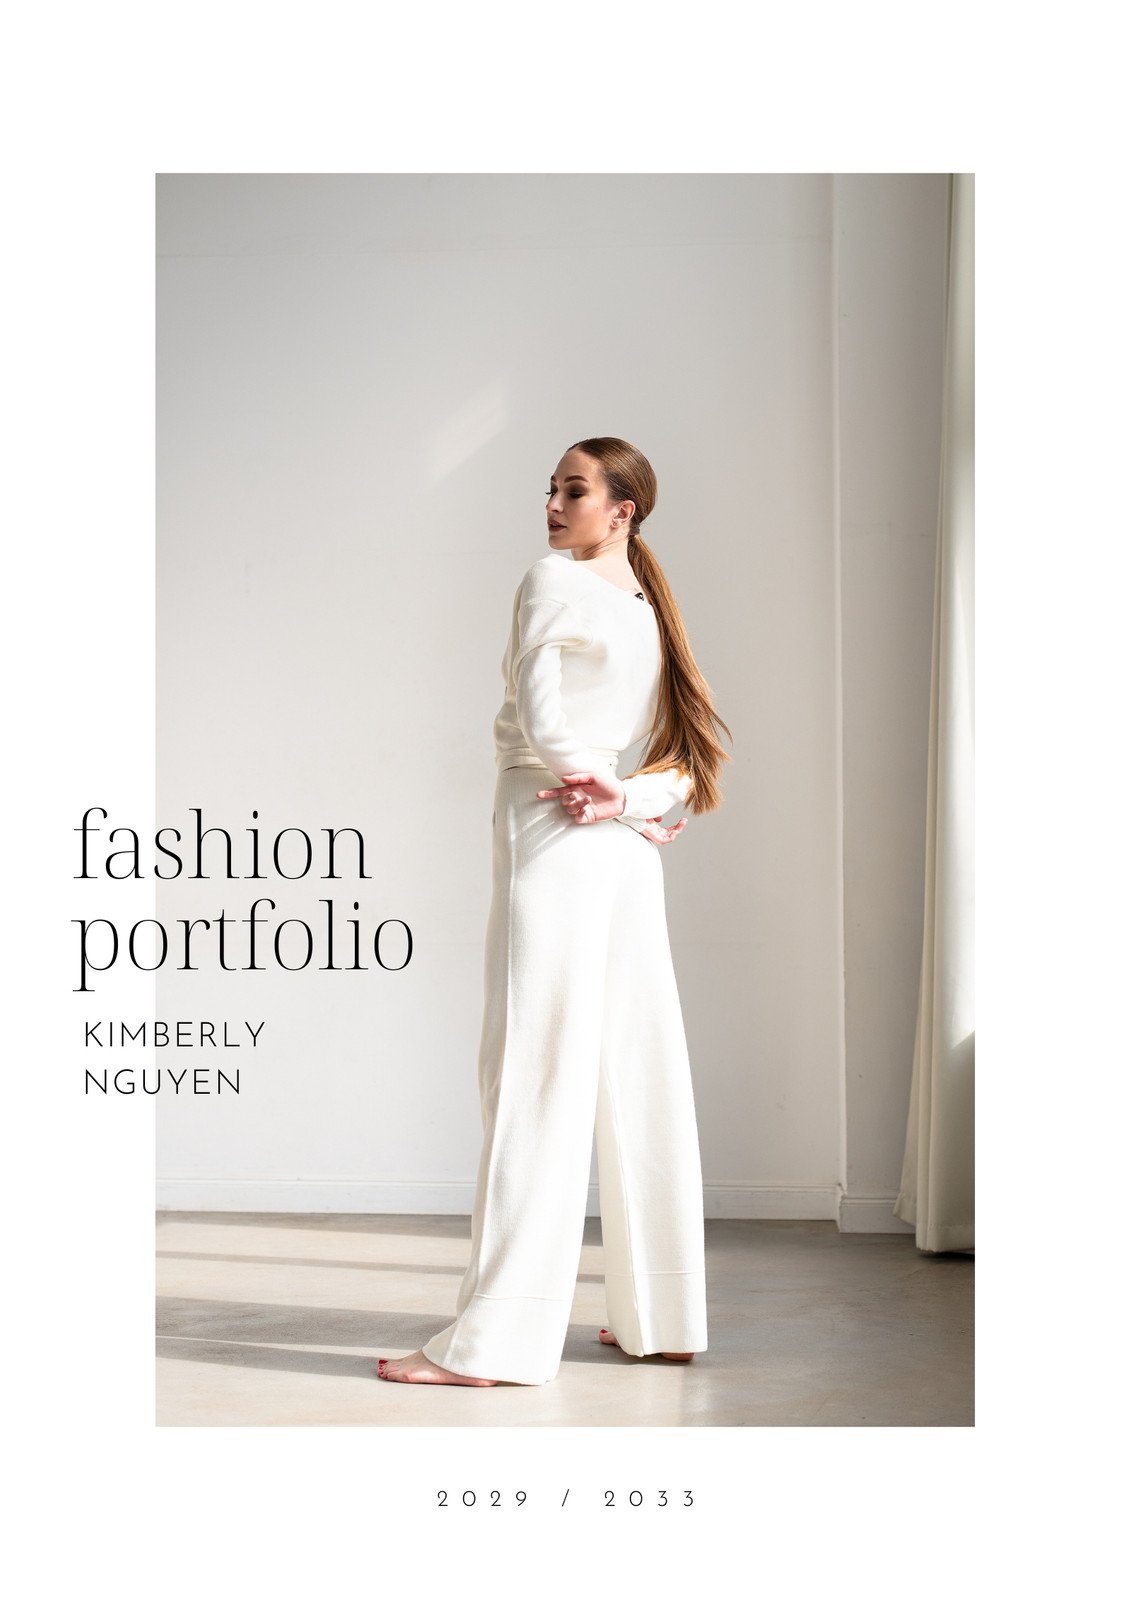 White Neutral Aesthetic Fashion Portfolio Photo Cover A4 Document